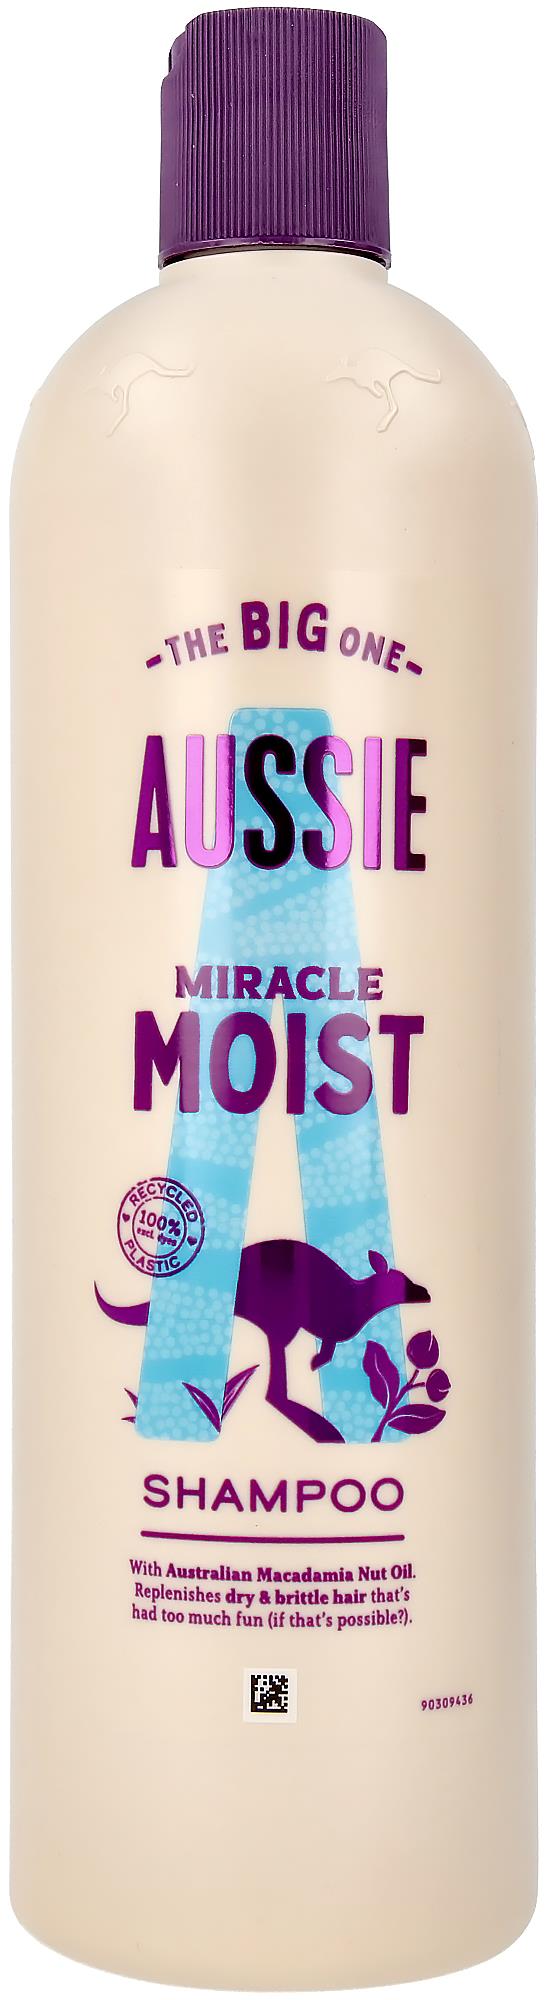 Aussie Miracle Moist Shampoo |